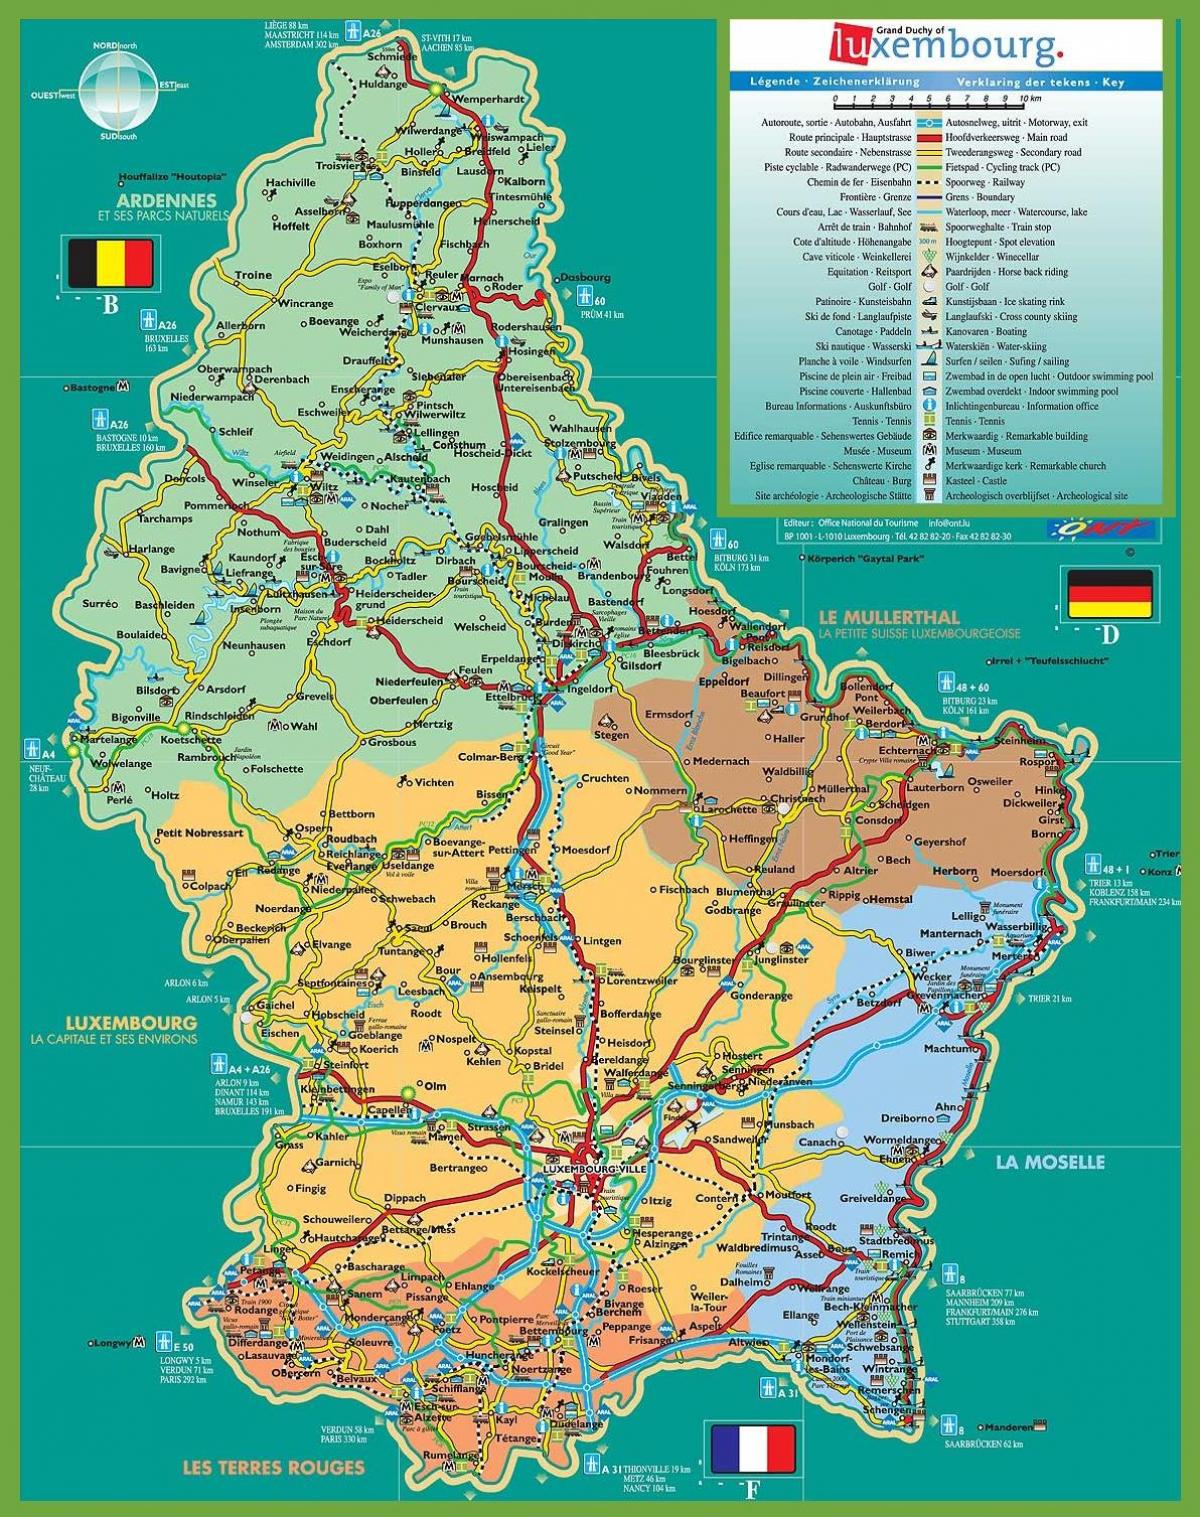 Luxemburg-aantreklikhede kaart